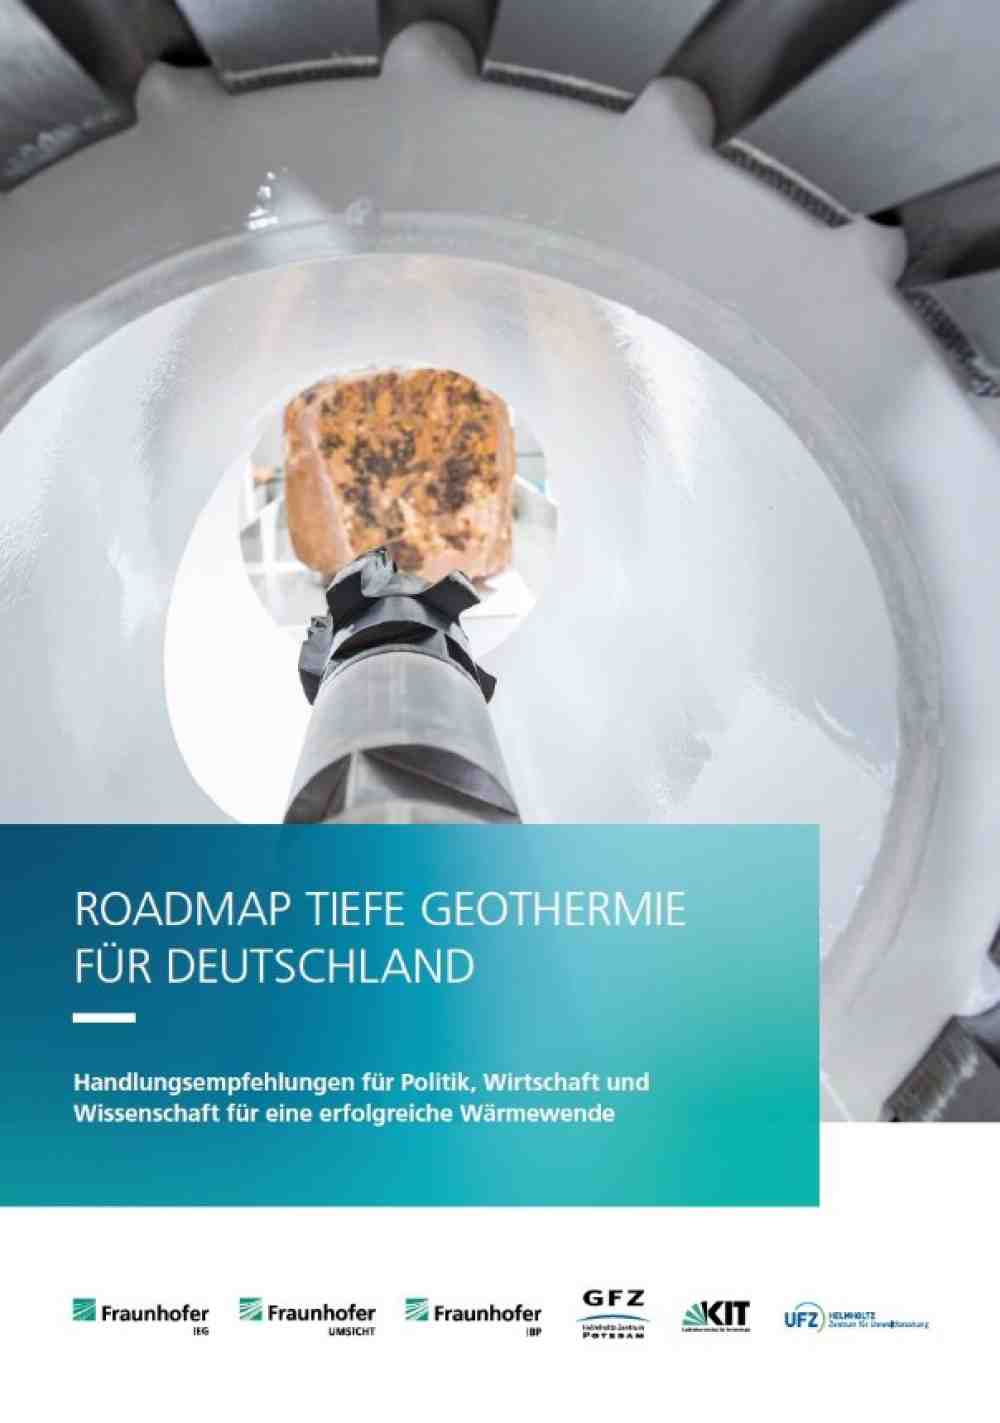 Fraunhofer: tiefe Geothermie, erfolgreiche Wärmewende gestalten